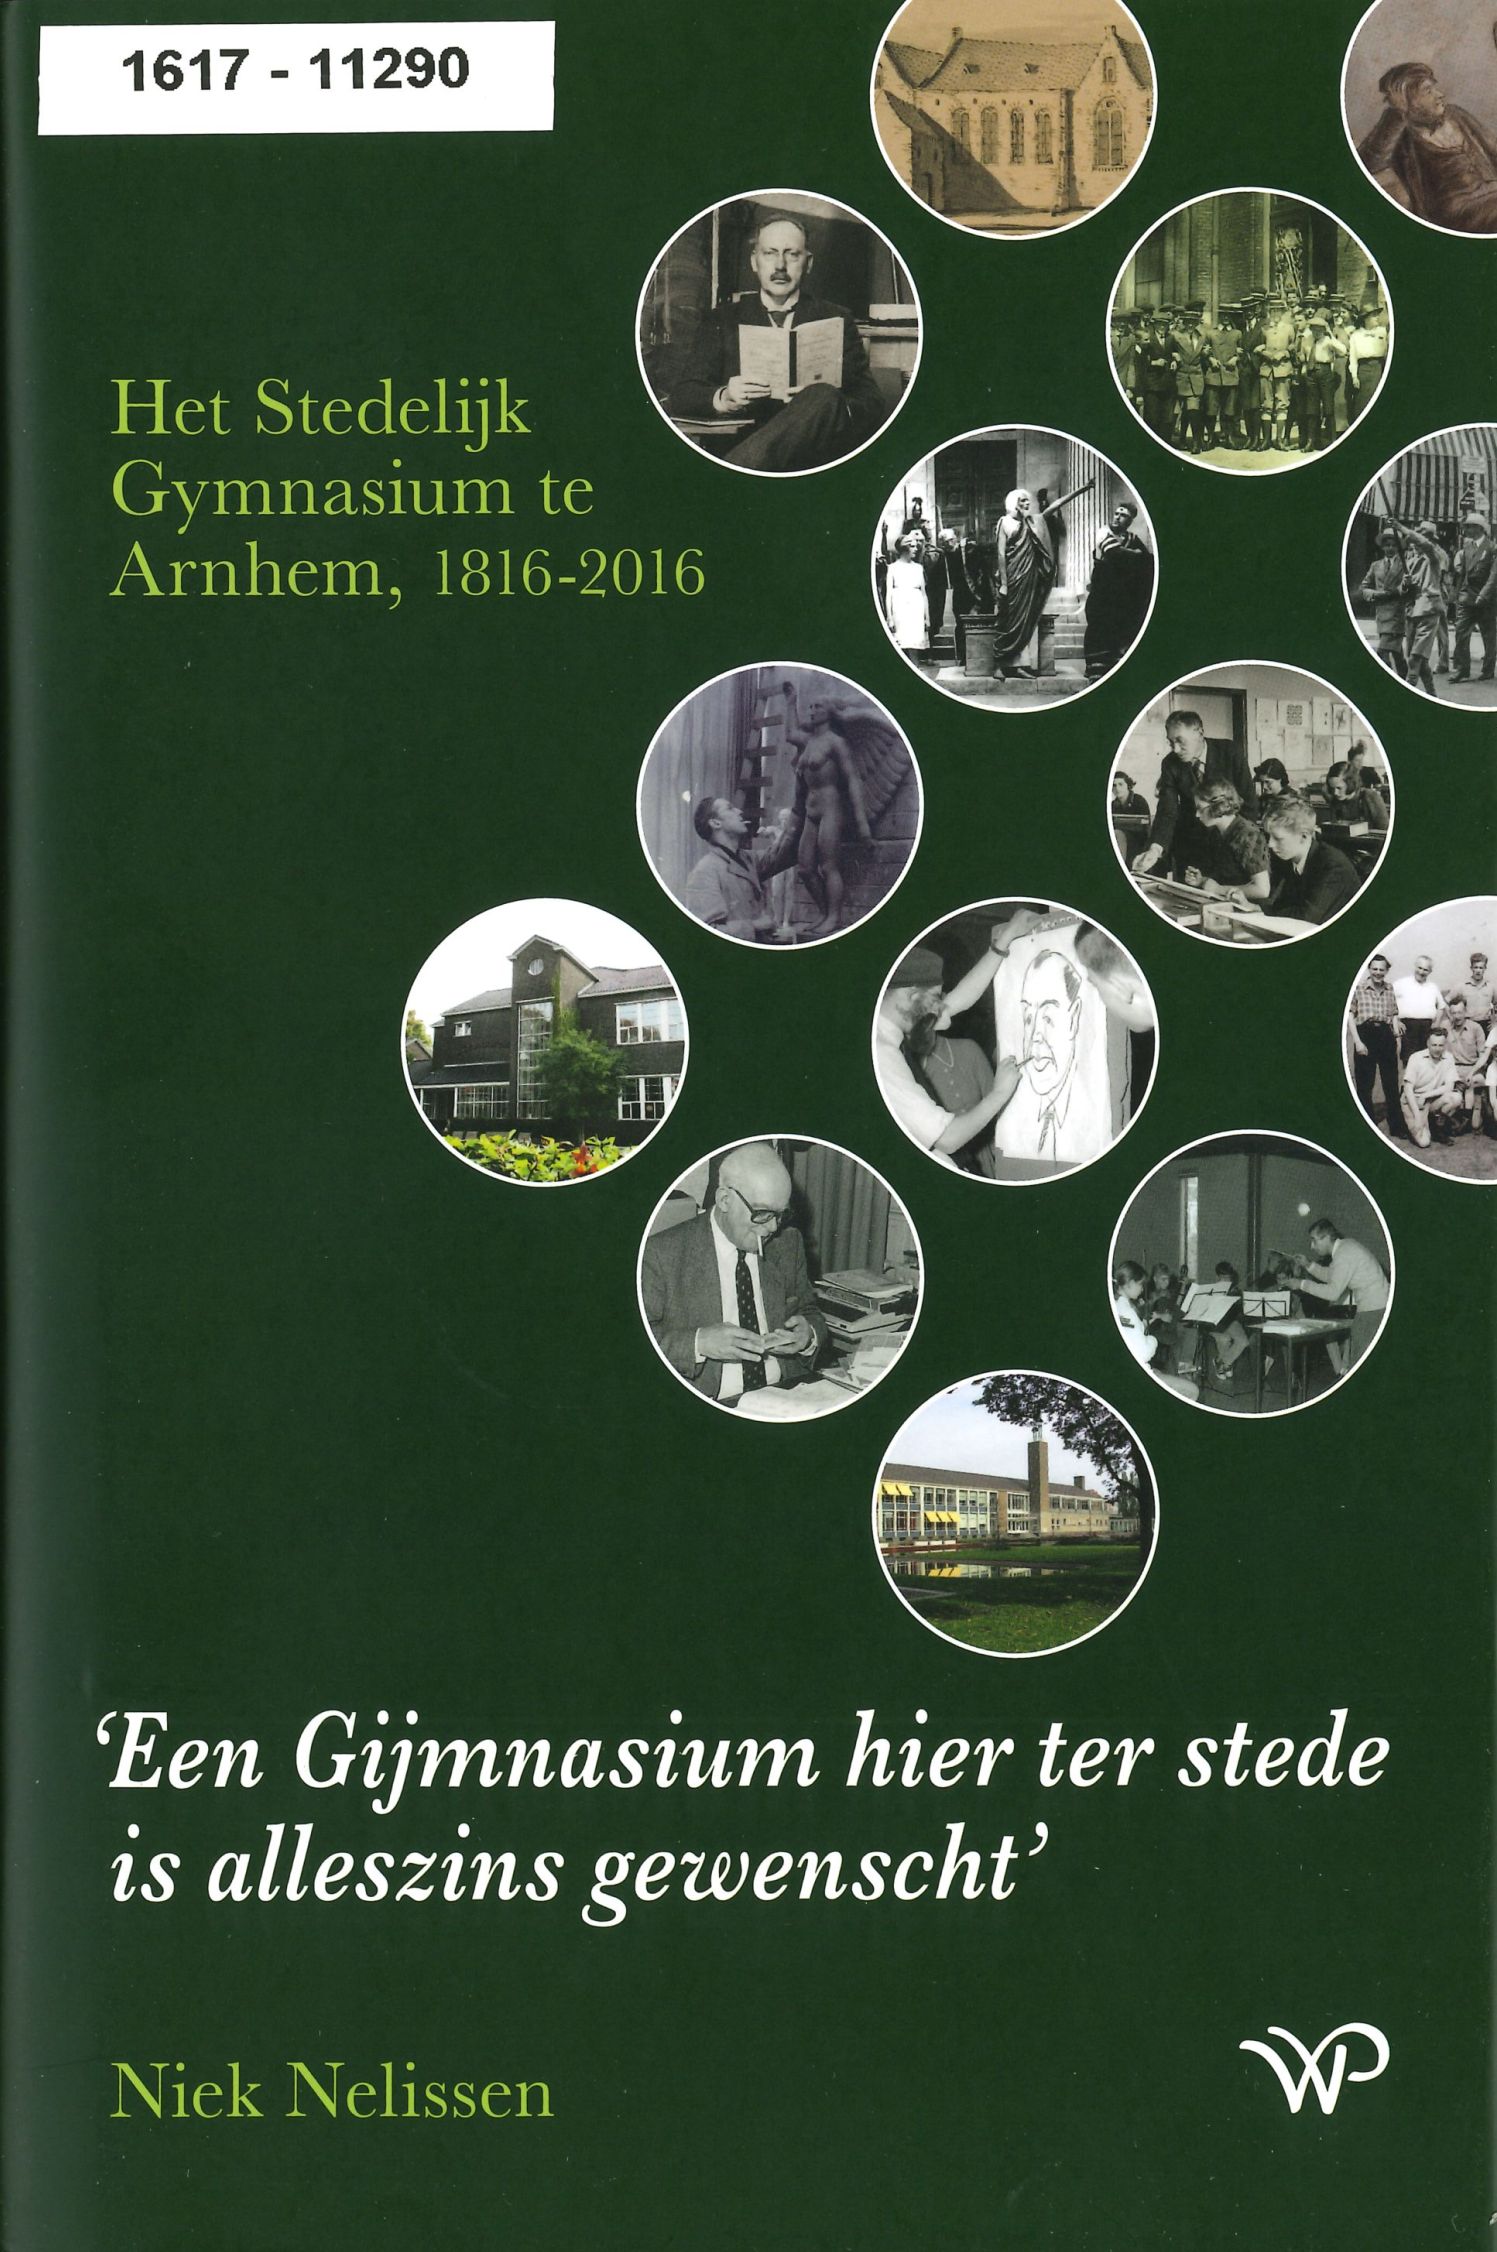 Omslag van het boek over het Stedelijk Gymnasium in Arnhem